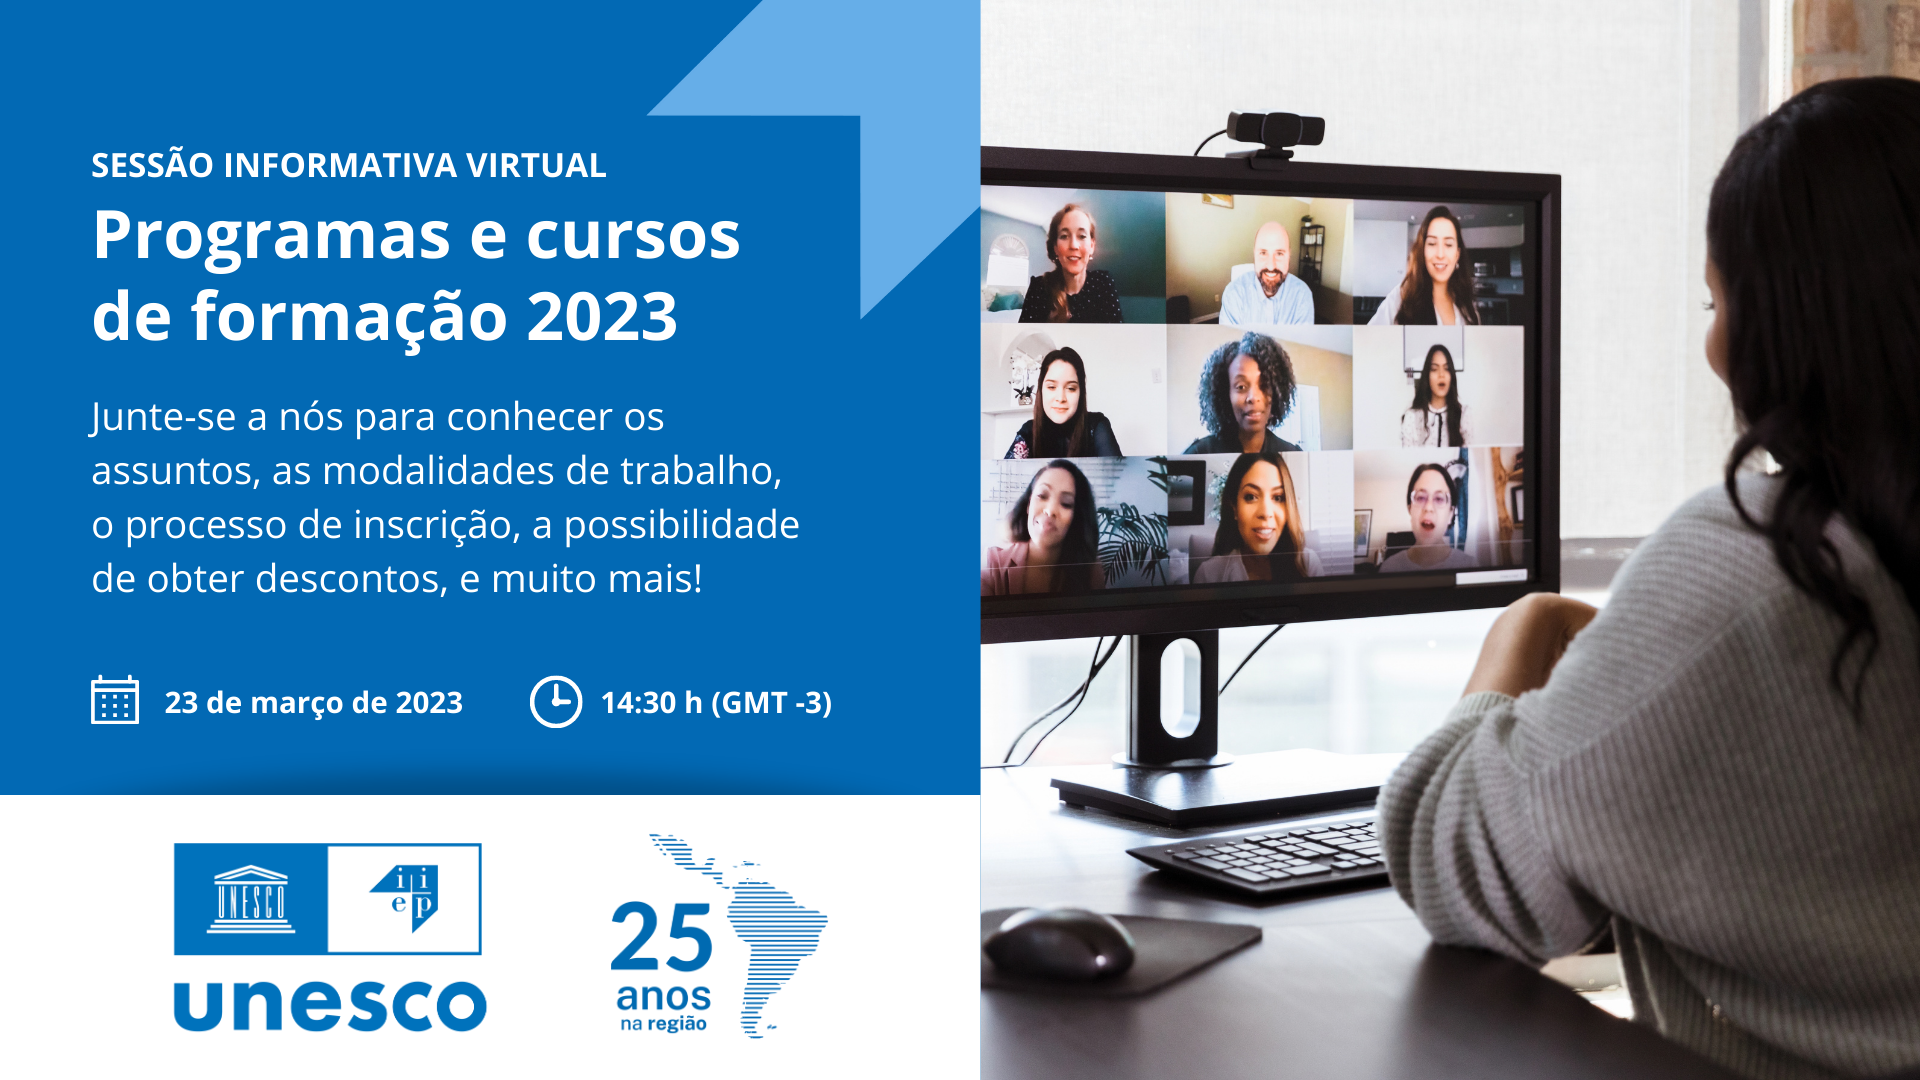 Sessão informativa virtual: programas e cursos de formação 2023